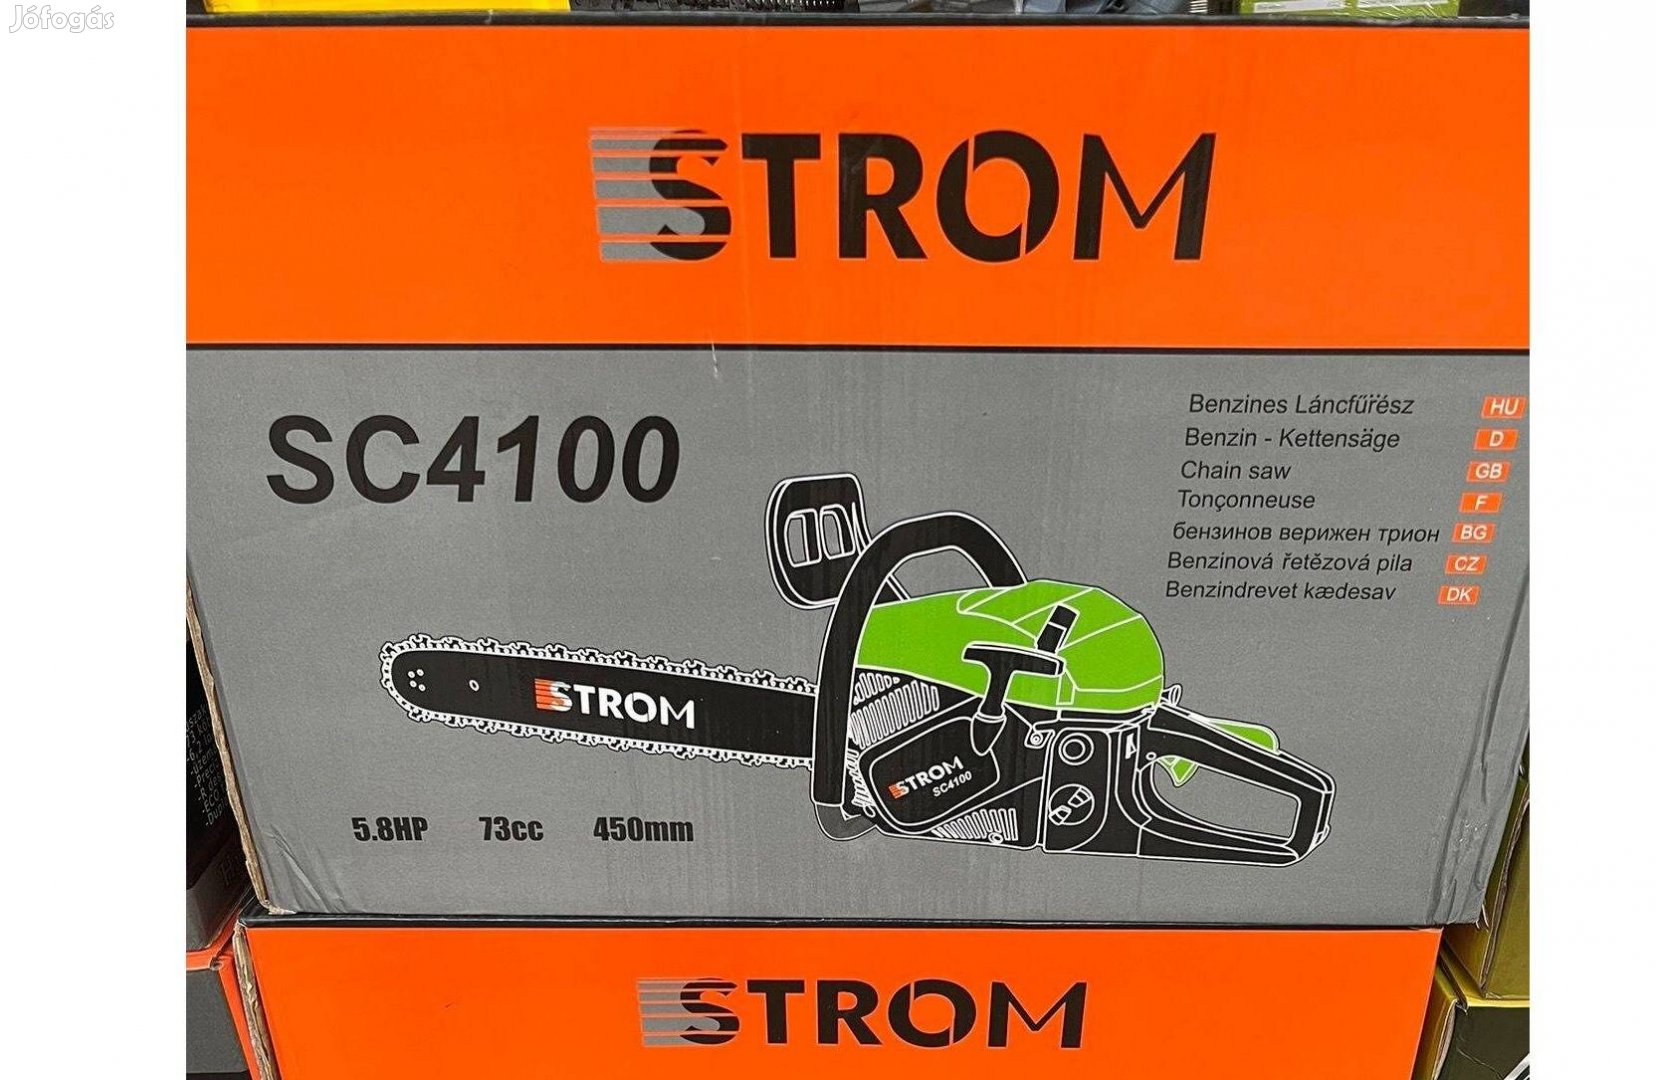 Új Strom SC4100 Benzinmotoros Láncfűrész 73ccm 5,8HP